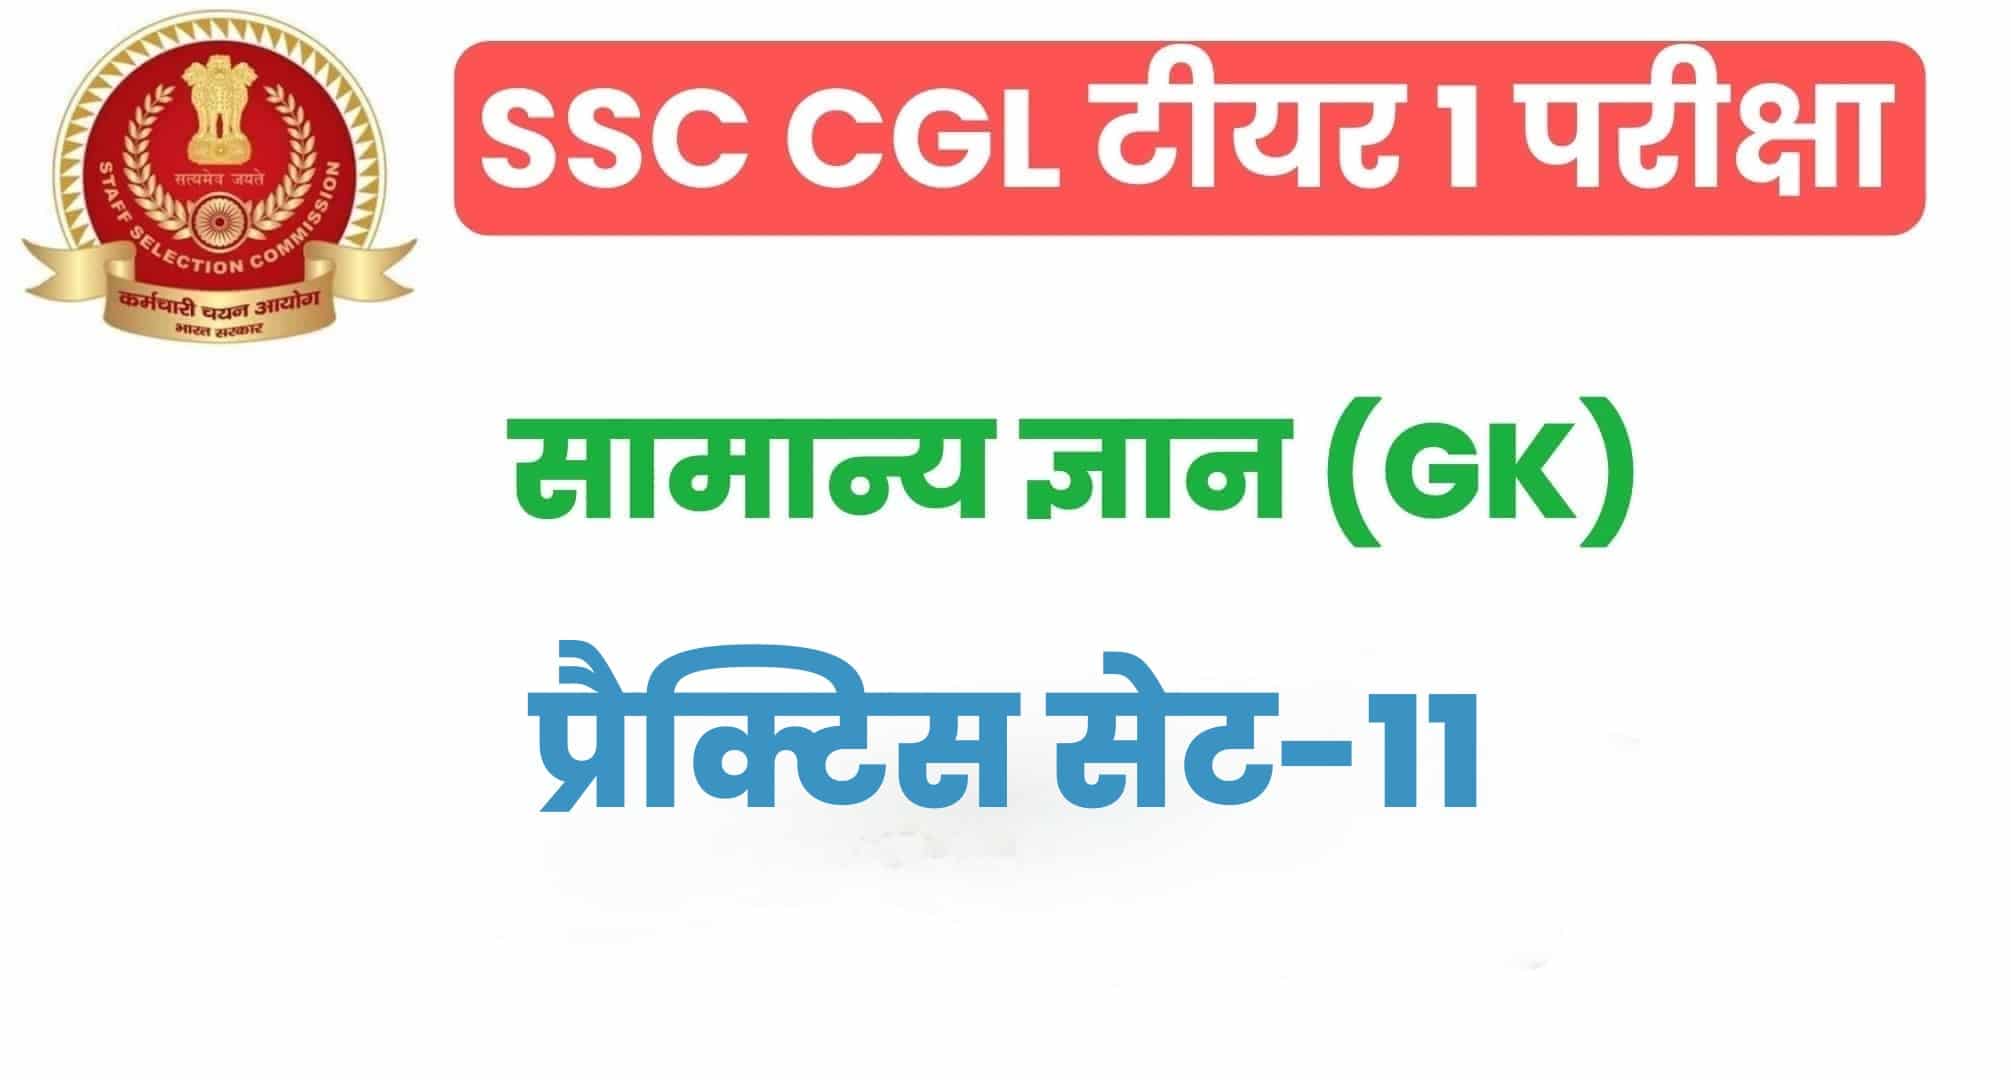 SSC CGL GK/GS प्रैक्टिस सेट 11 :  सामान्य ज्ञान के 25 अतिमहत्वपूर्ण प्रश्न, परीक्षा से पहले जरूर अध्ययन करें